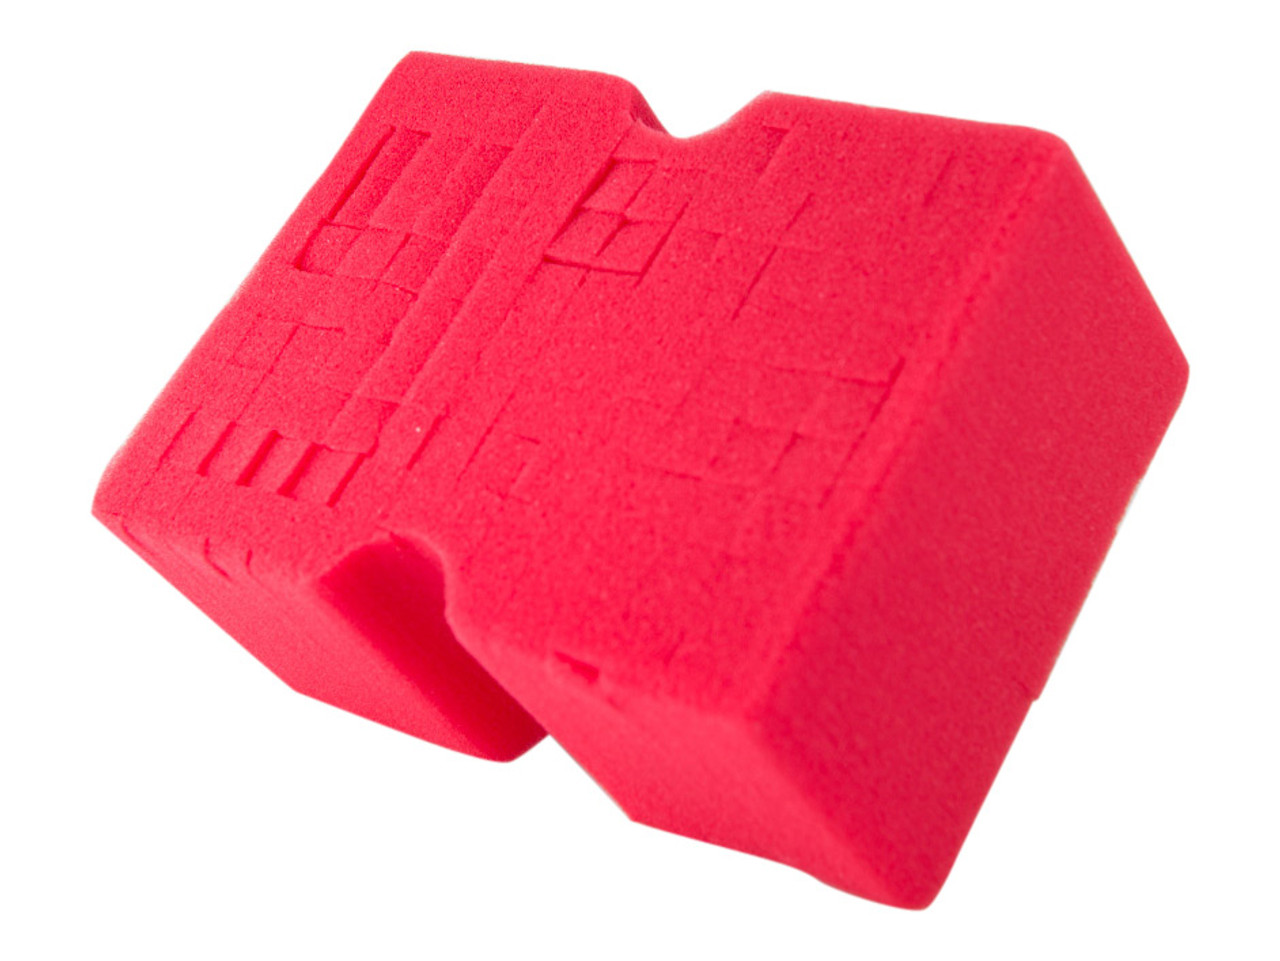 Optimum Big Red Wash Sponge